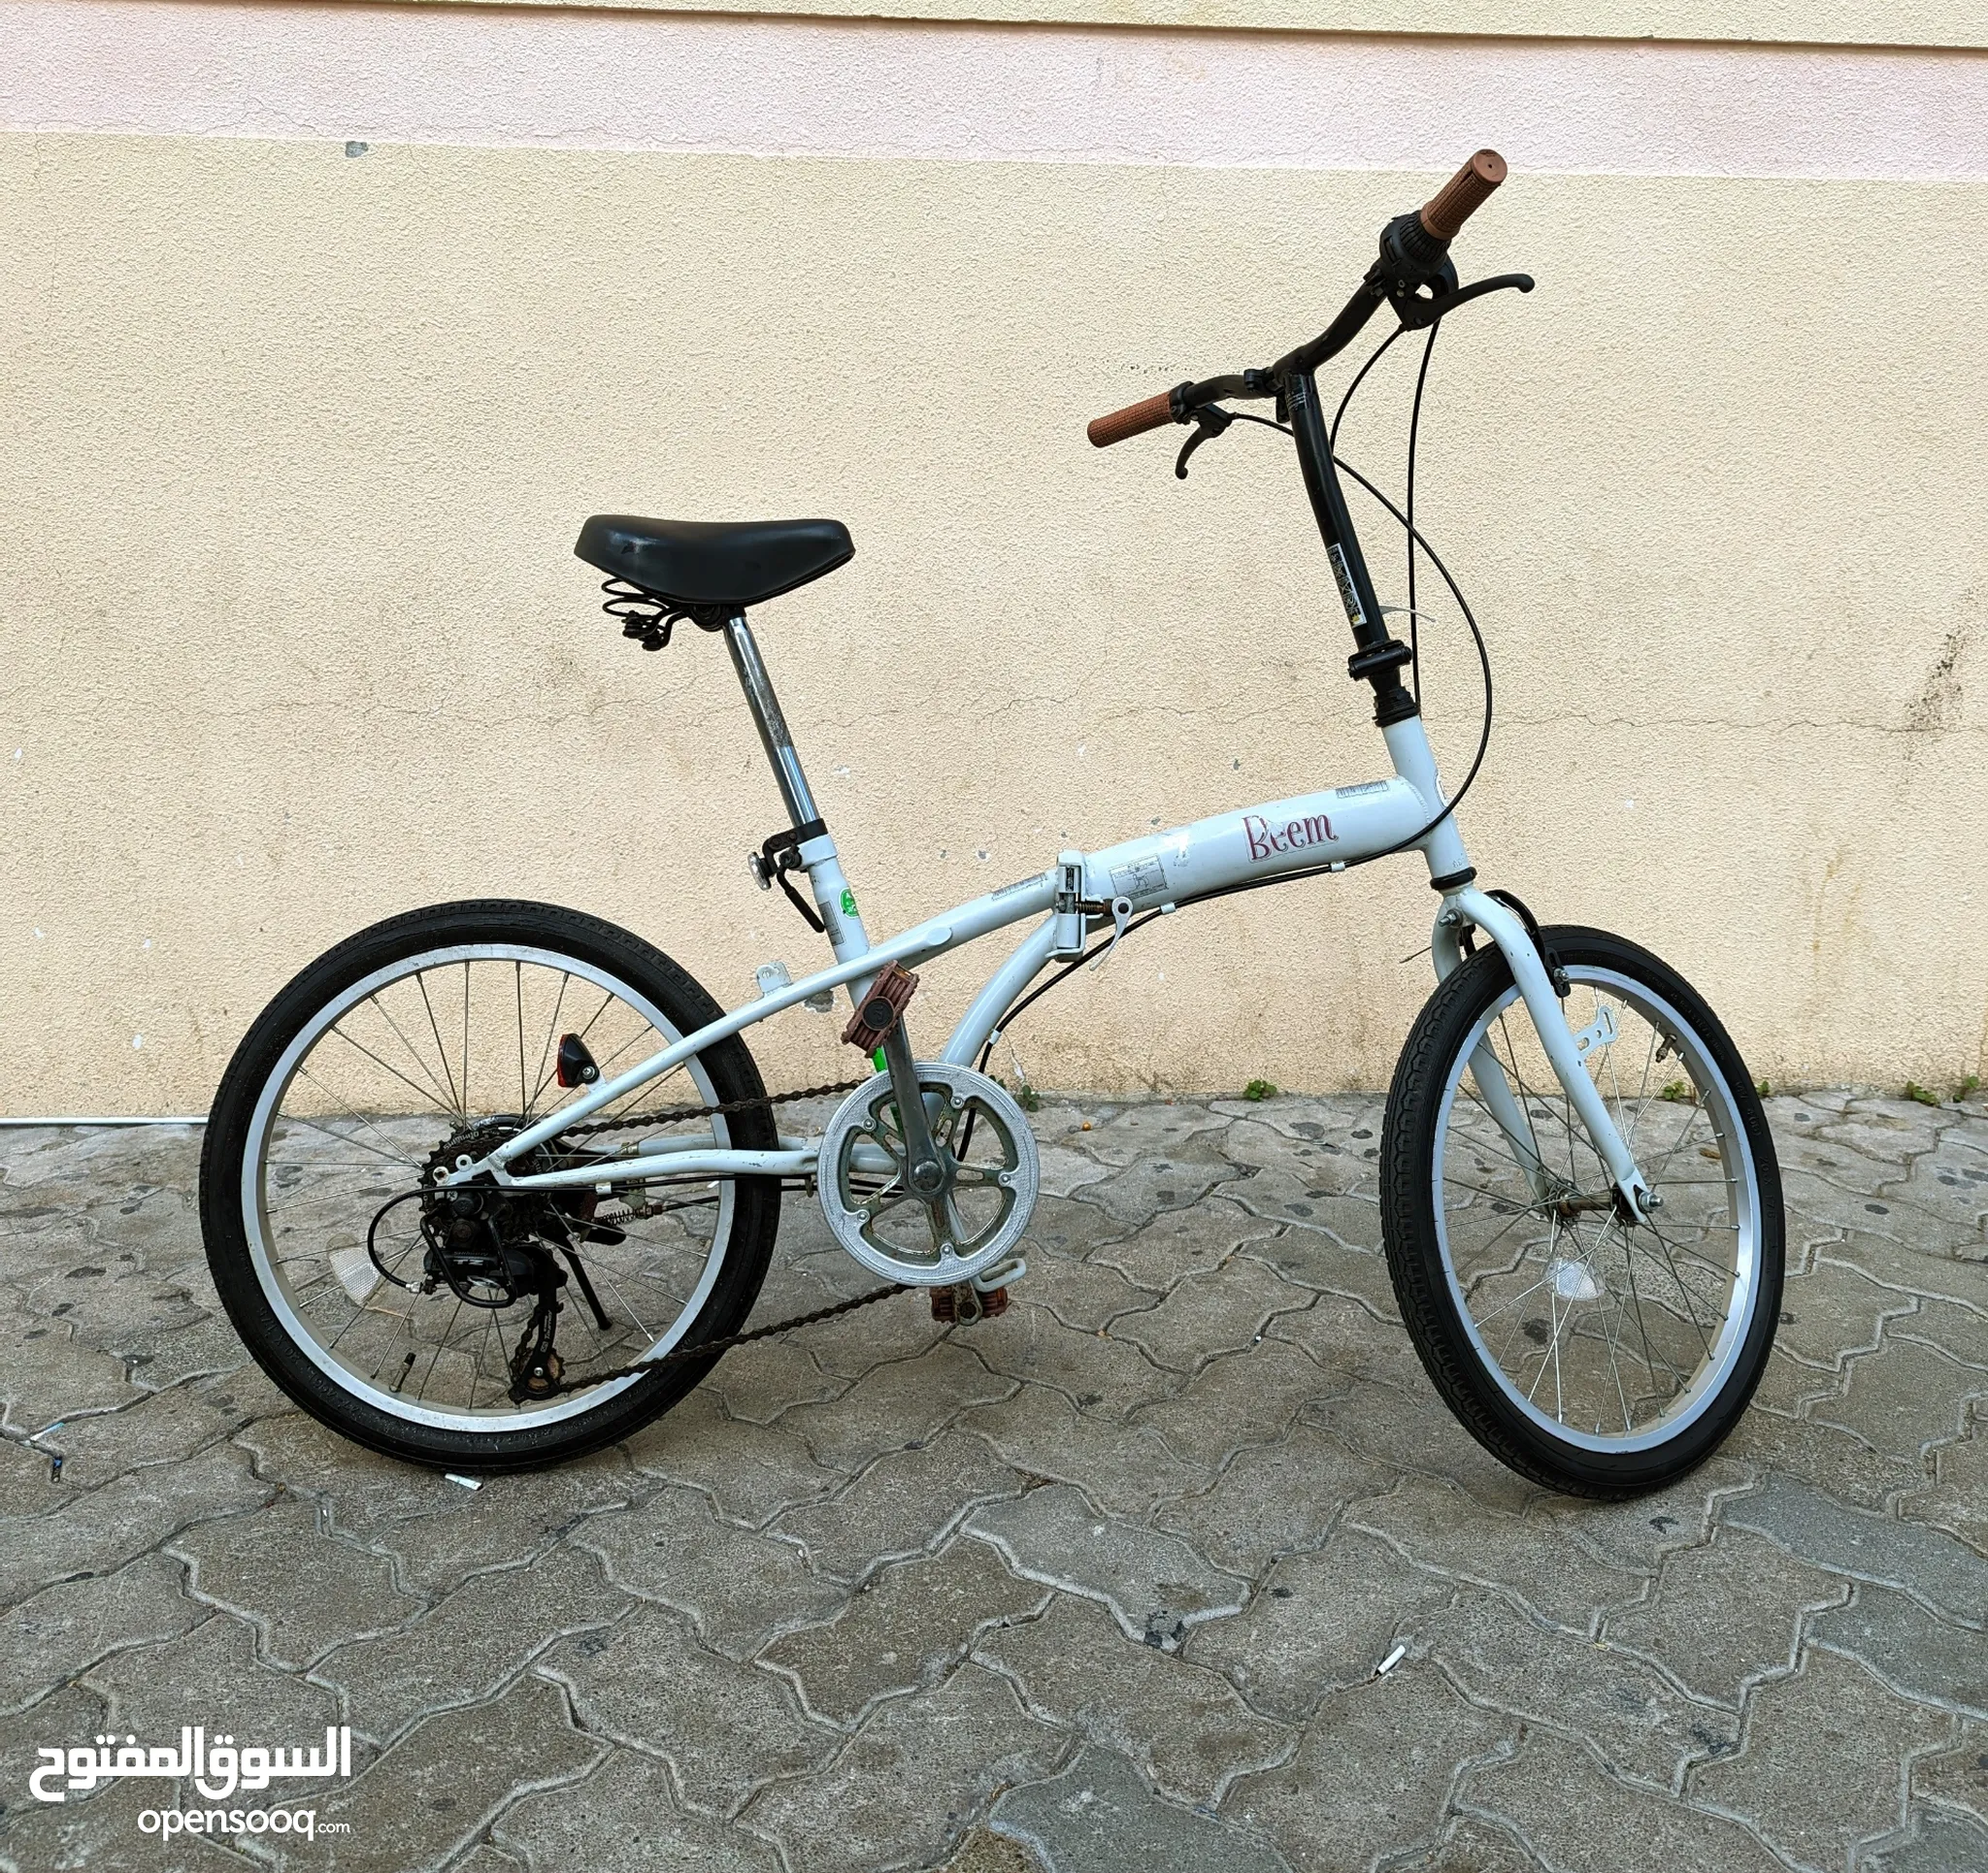 دراجات هوائية للبيع : دراجات على الطرق : جبلية : للأطفال : قطع غيار  واكسسوار : ارخص الاسعار في الإمارات | السوق المفتوح